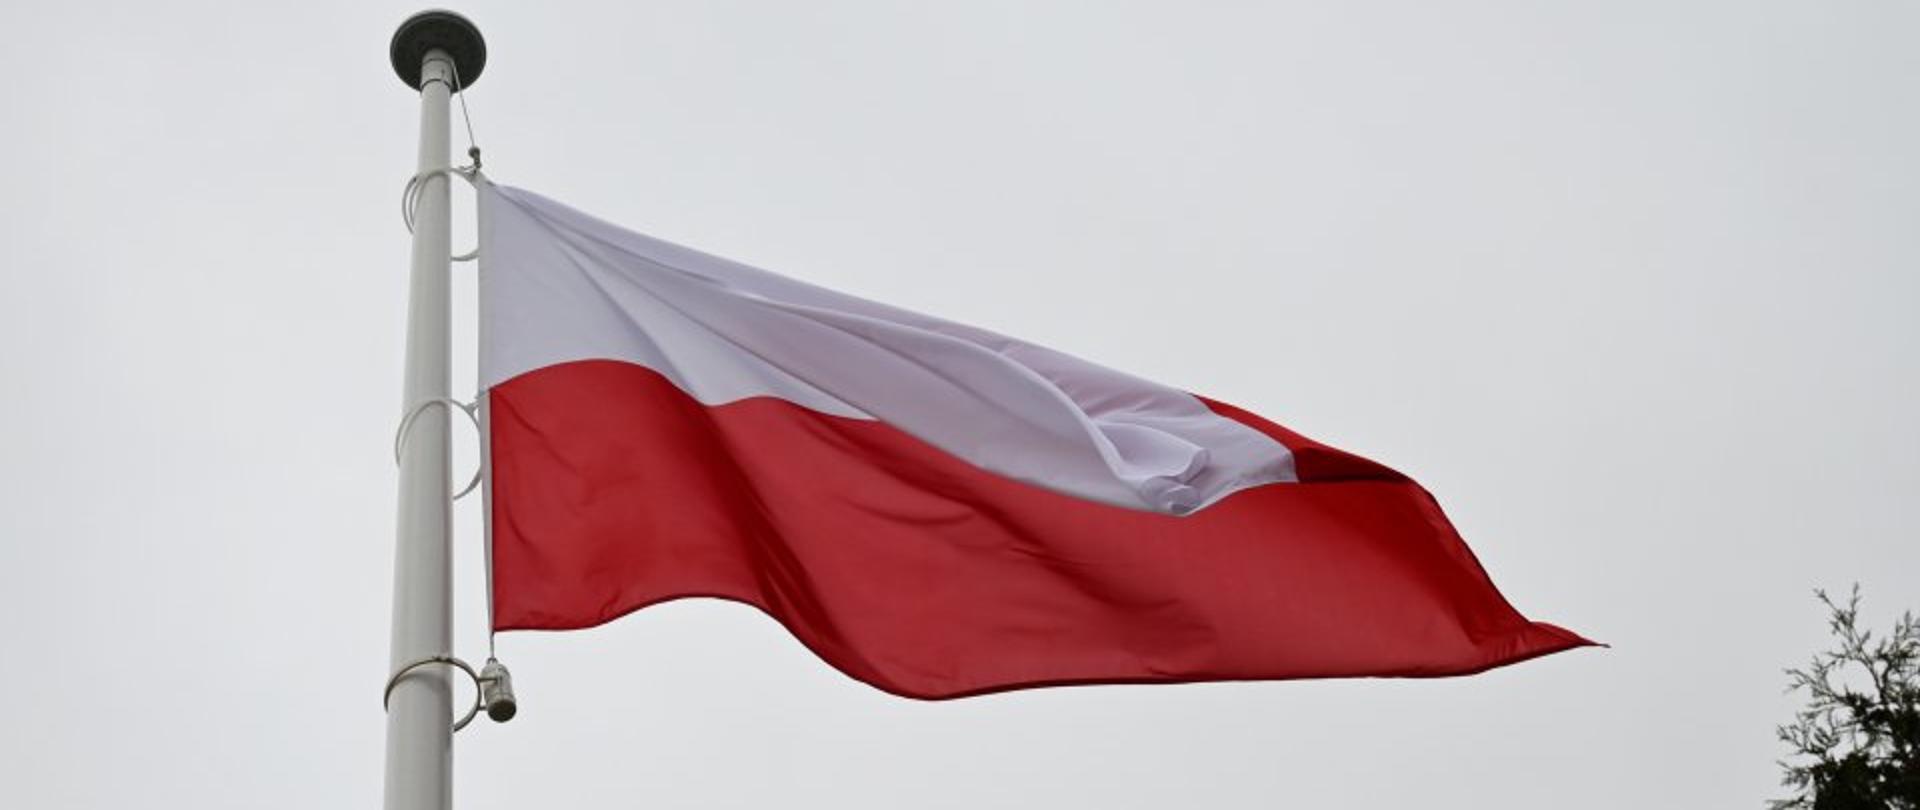 Na zdjęciu widzimy powiewającą na wietrze flagę Polski wiszącą na maszcie